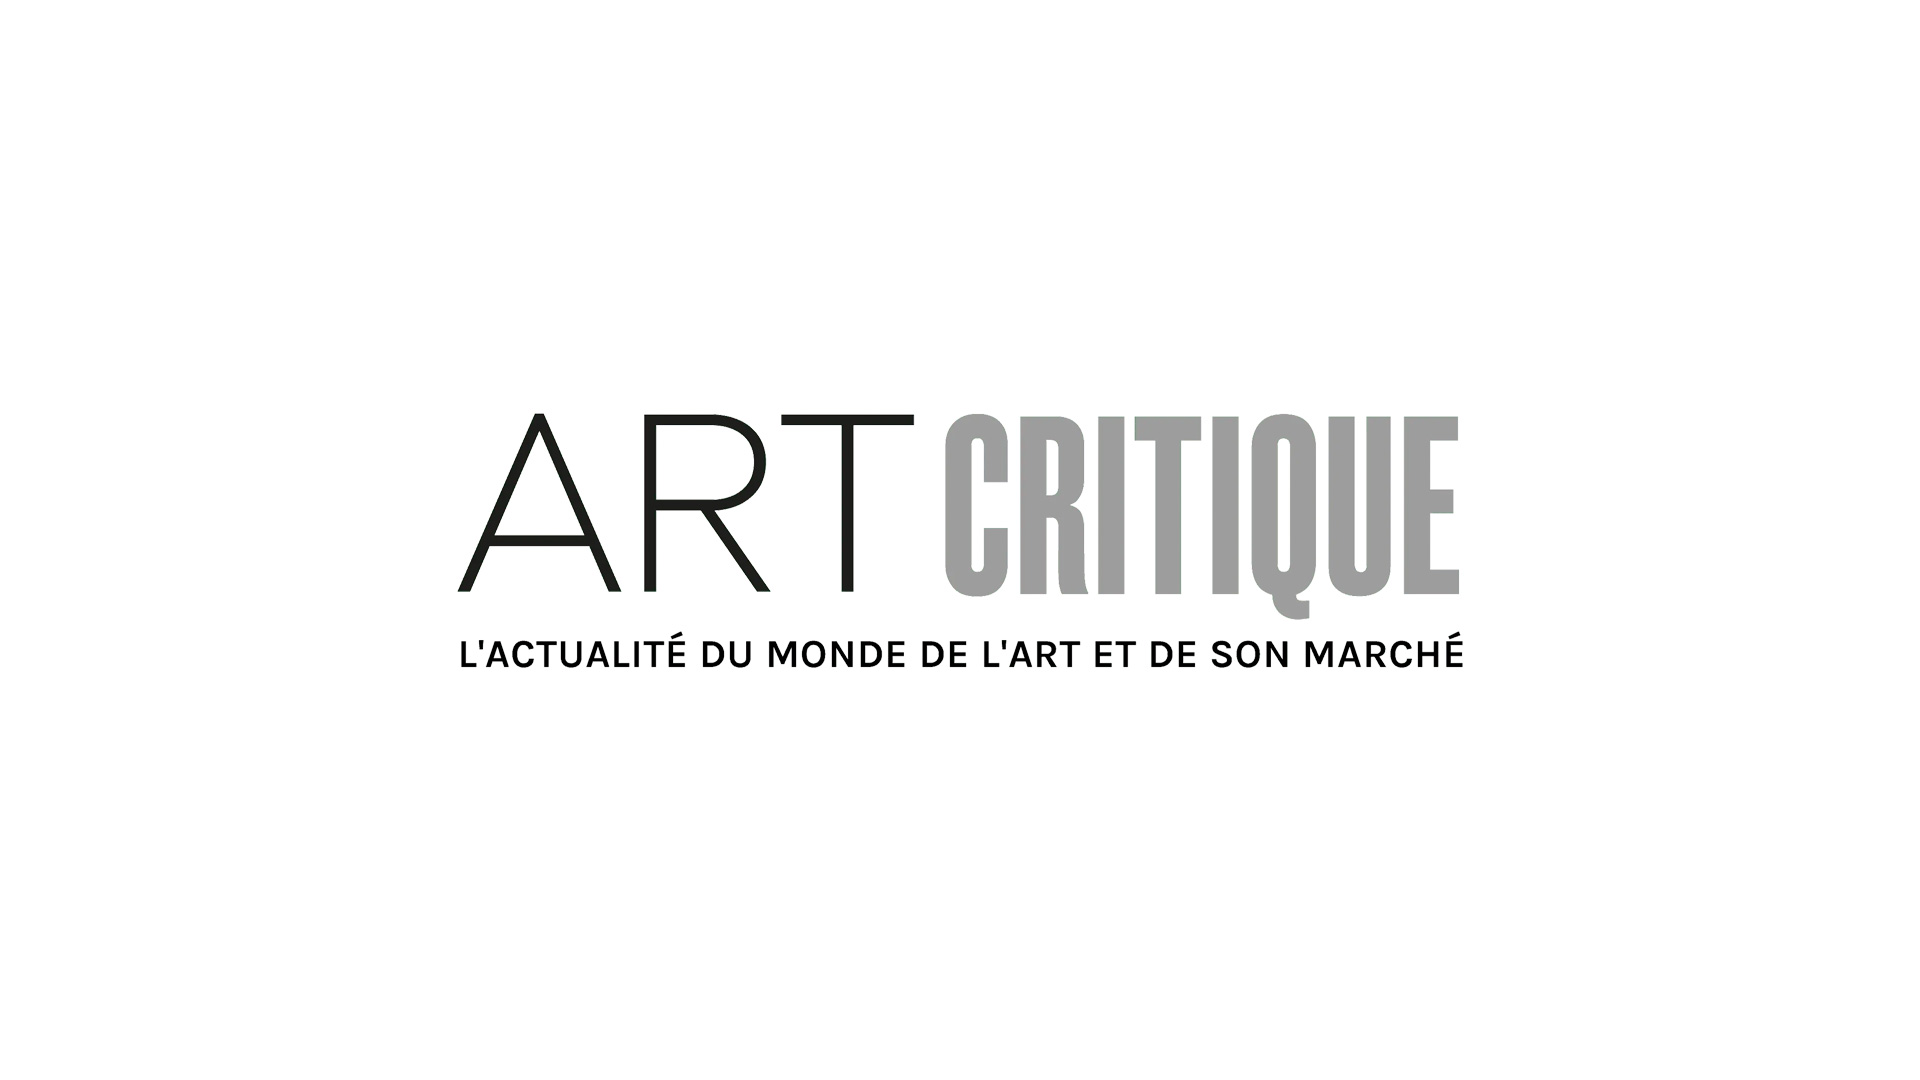 Le musée des Beaux-Arts de Lyon invite Eric Poitevin